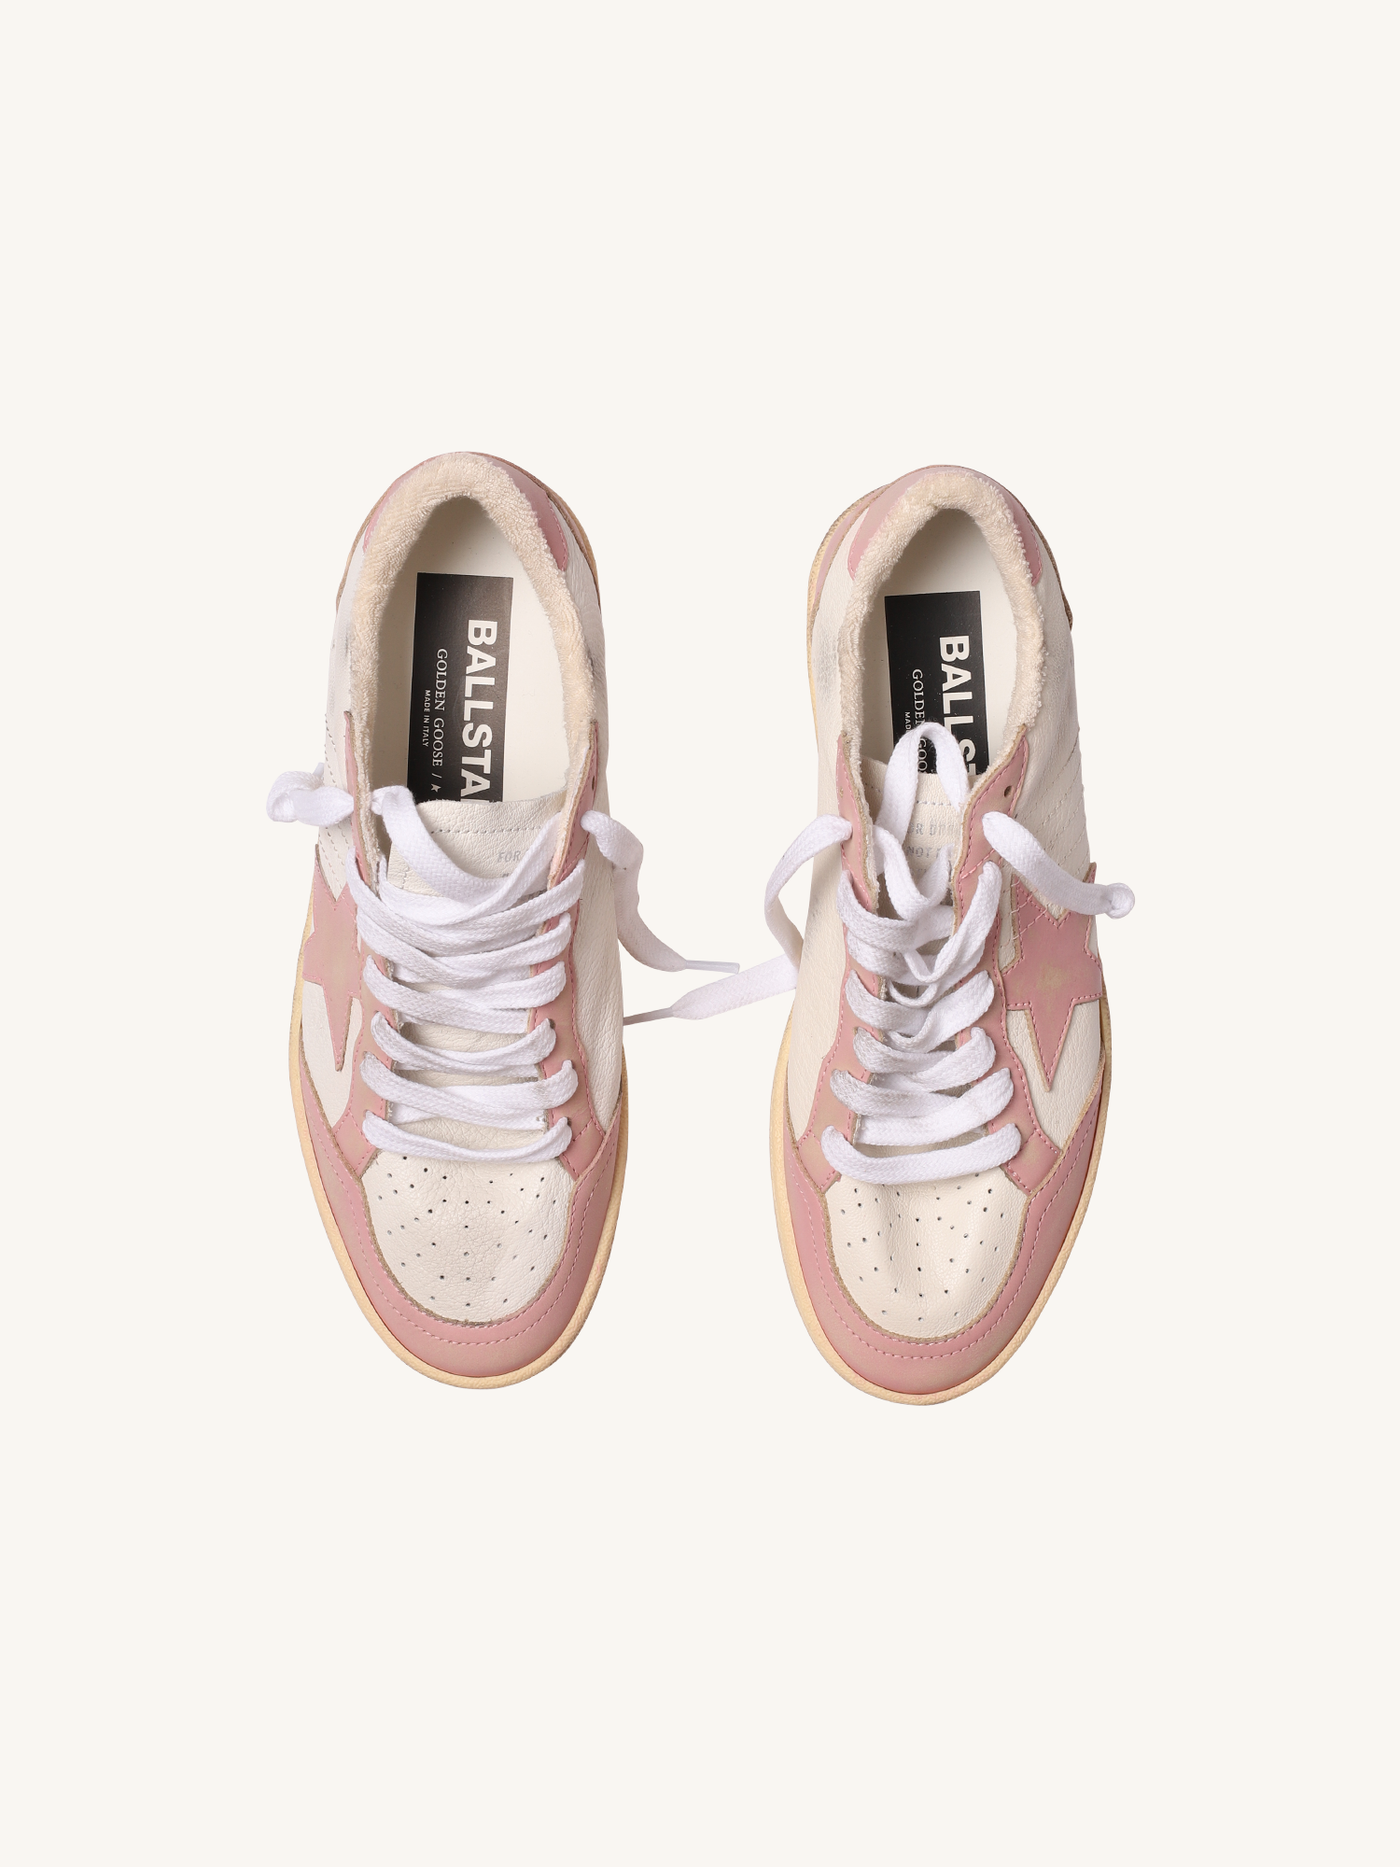 Ballstar Sneaker in White & Pink